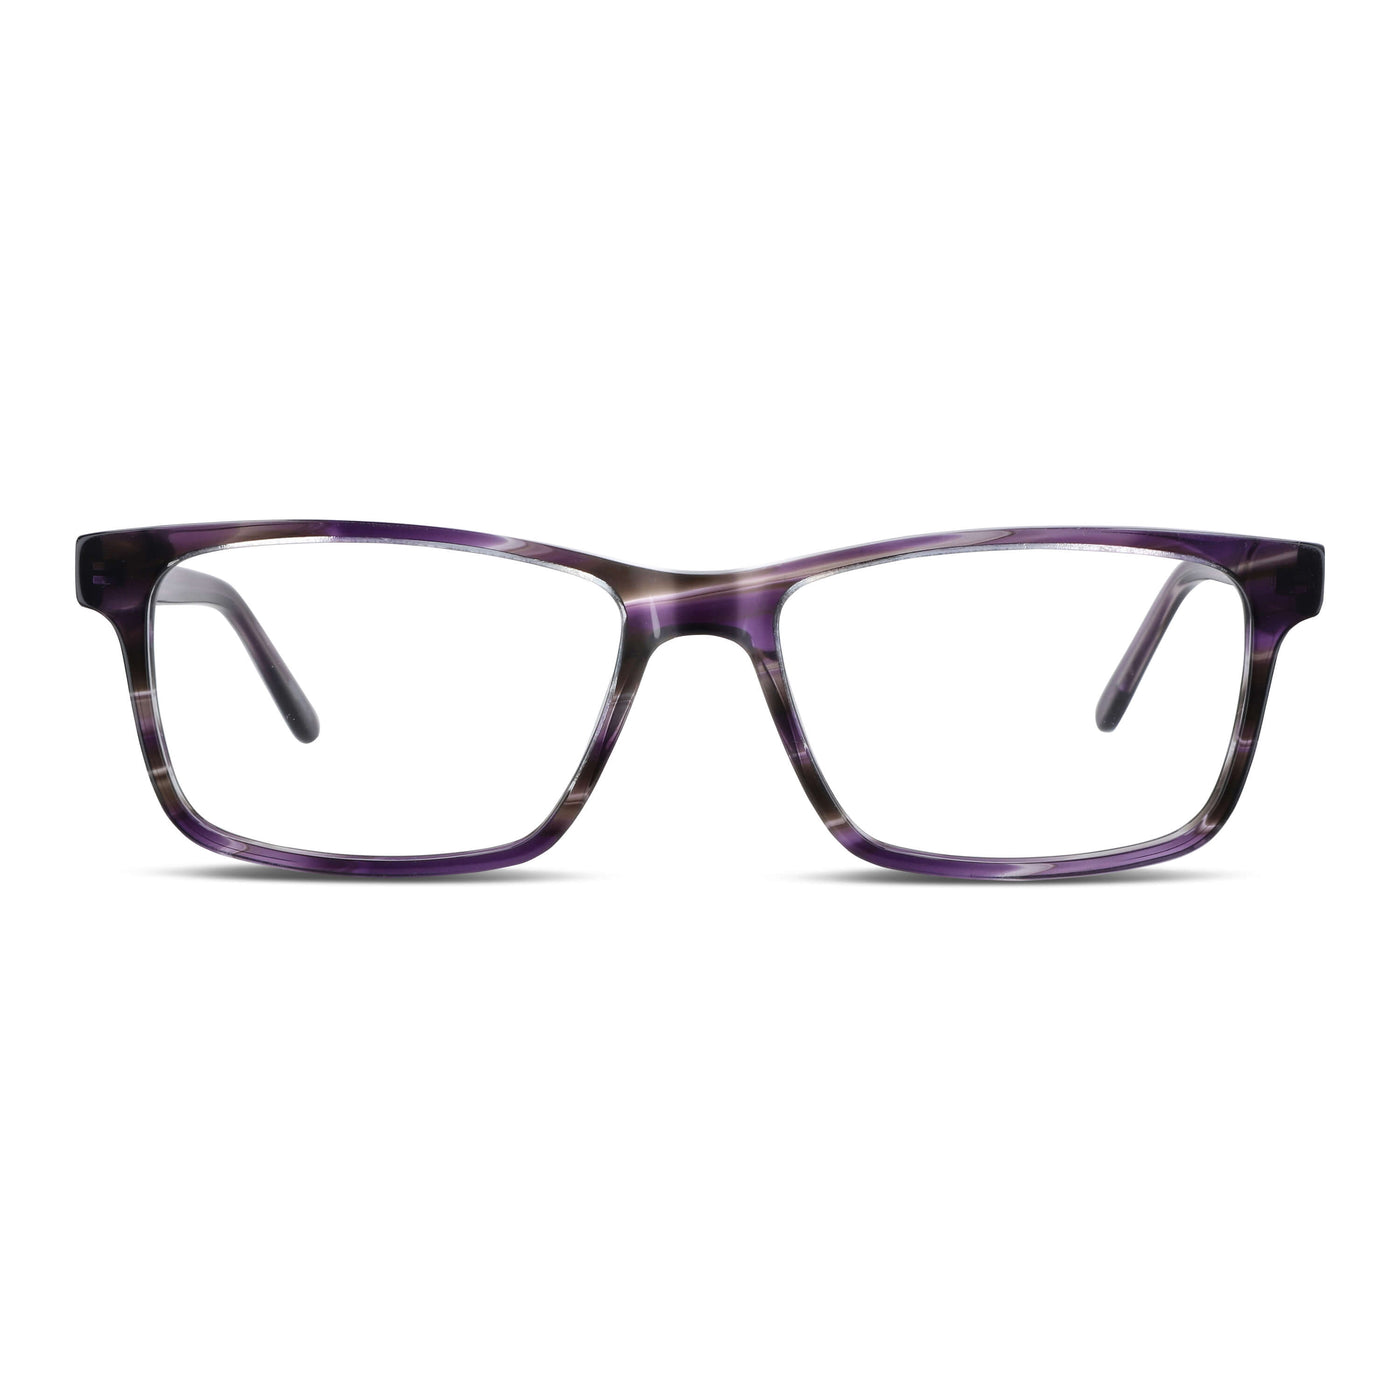  marcos lentes opticos receta multifocal bifocal adelgazado filtro azul morado.jpg